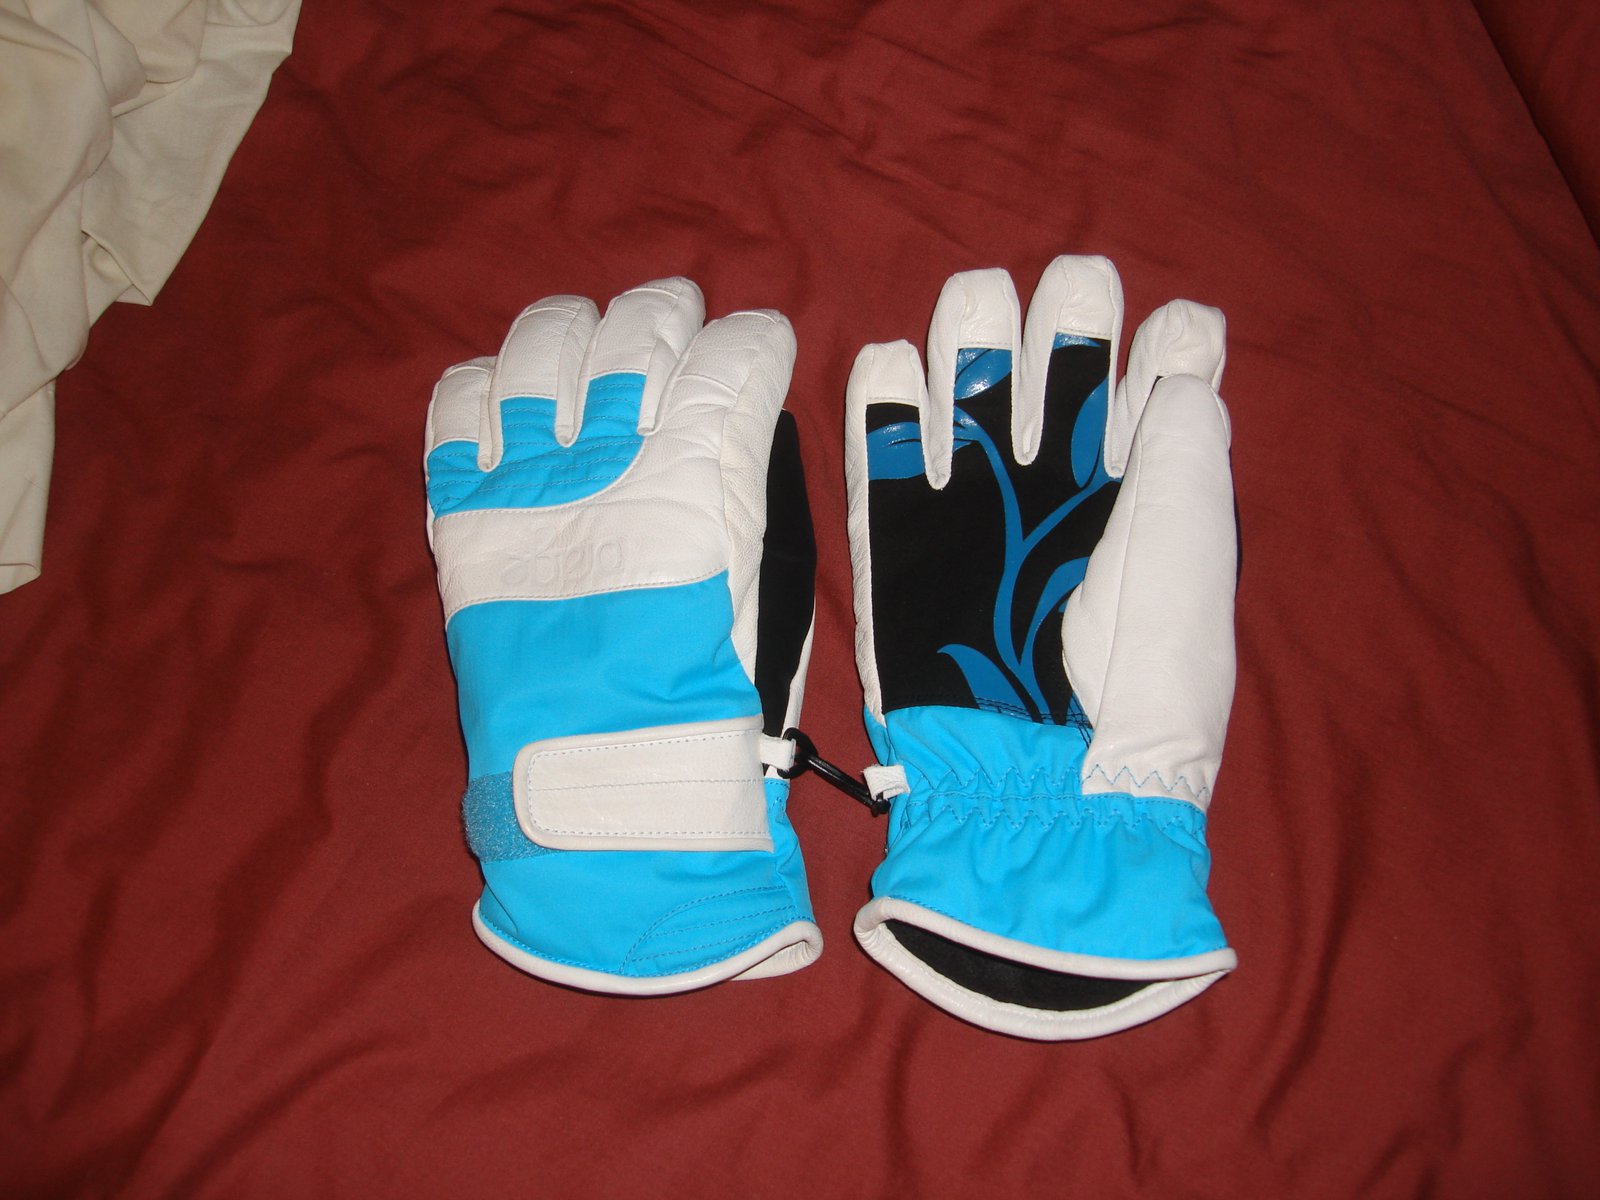 Orage gloves for sale